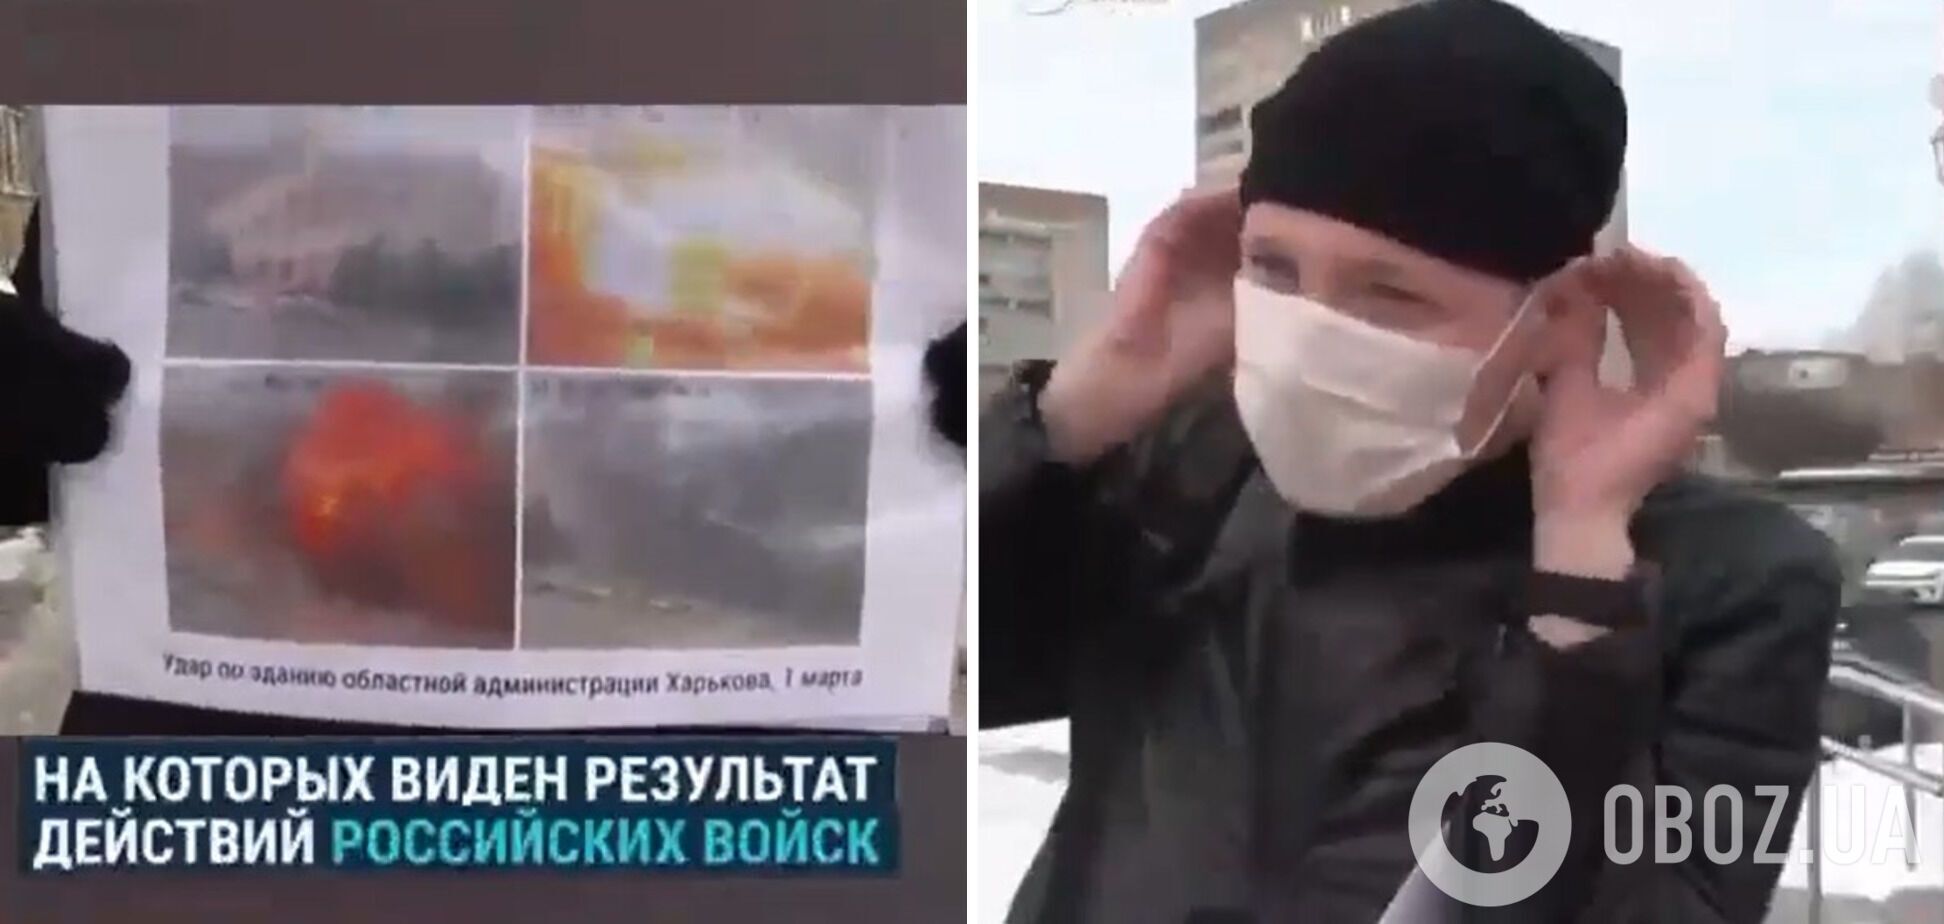 Побачивши фото зруйнованих військами РФ українських міст, росіяни розверталися і йшли